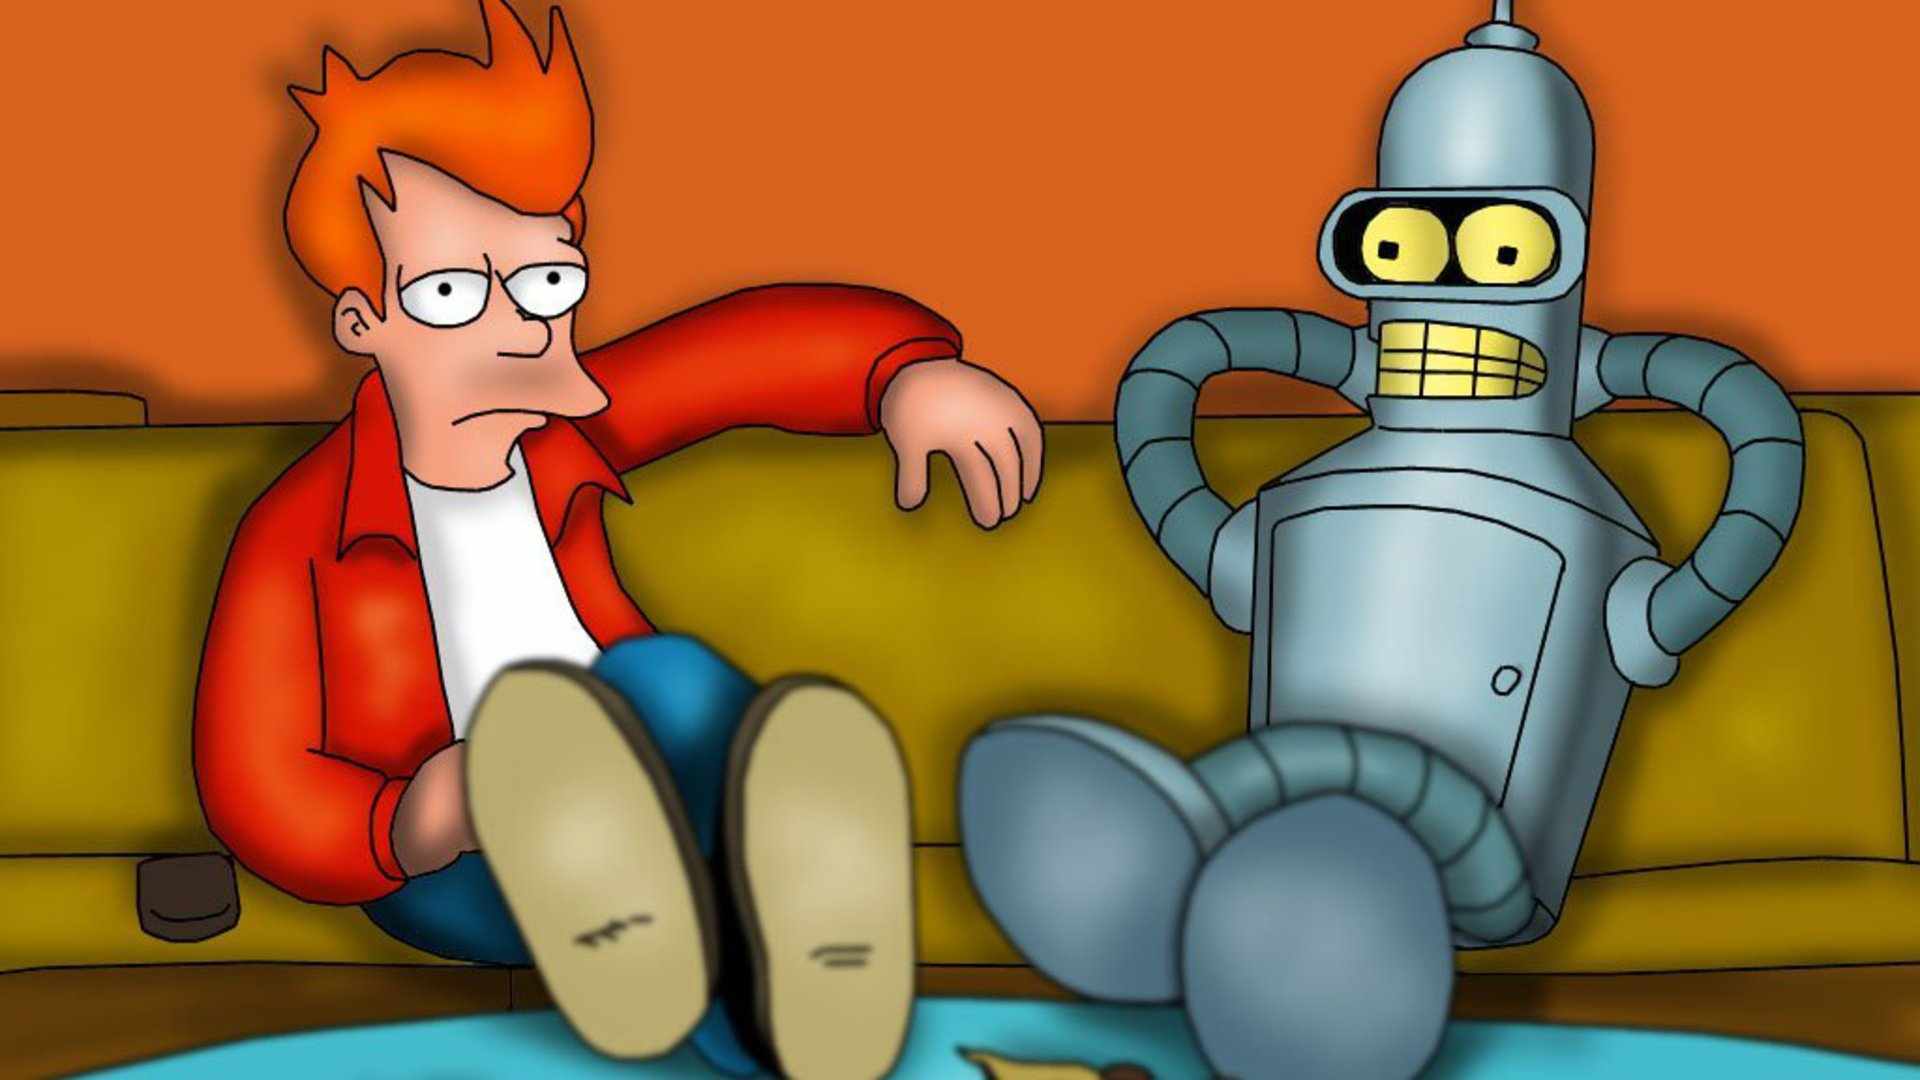 Bender Futurama Fry Futurama Futurama 1920x1080